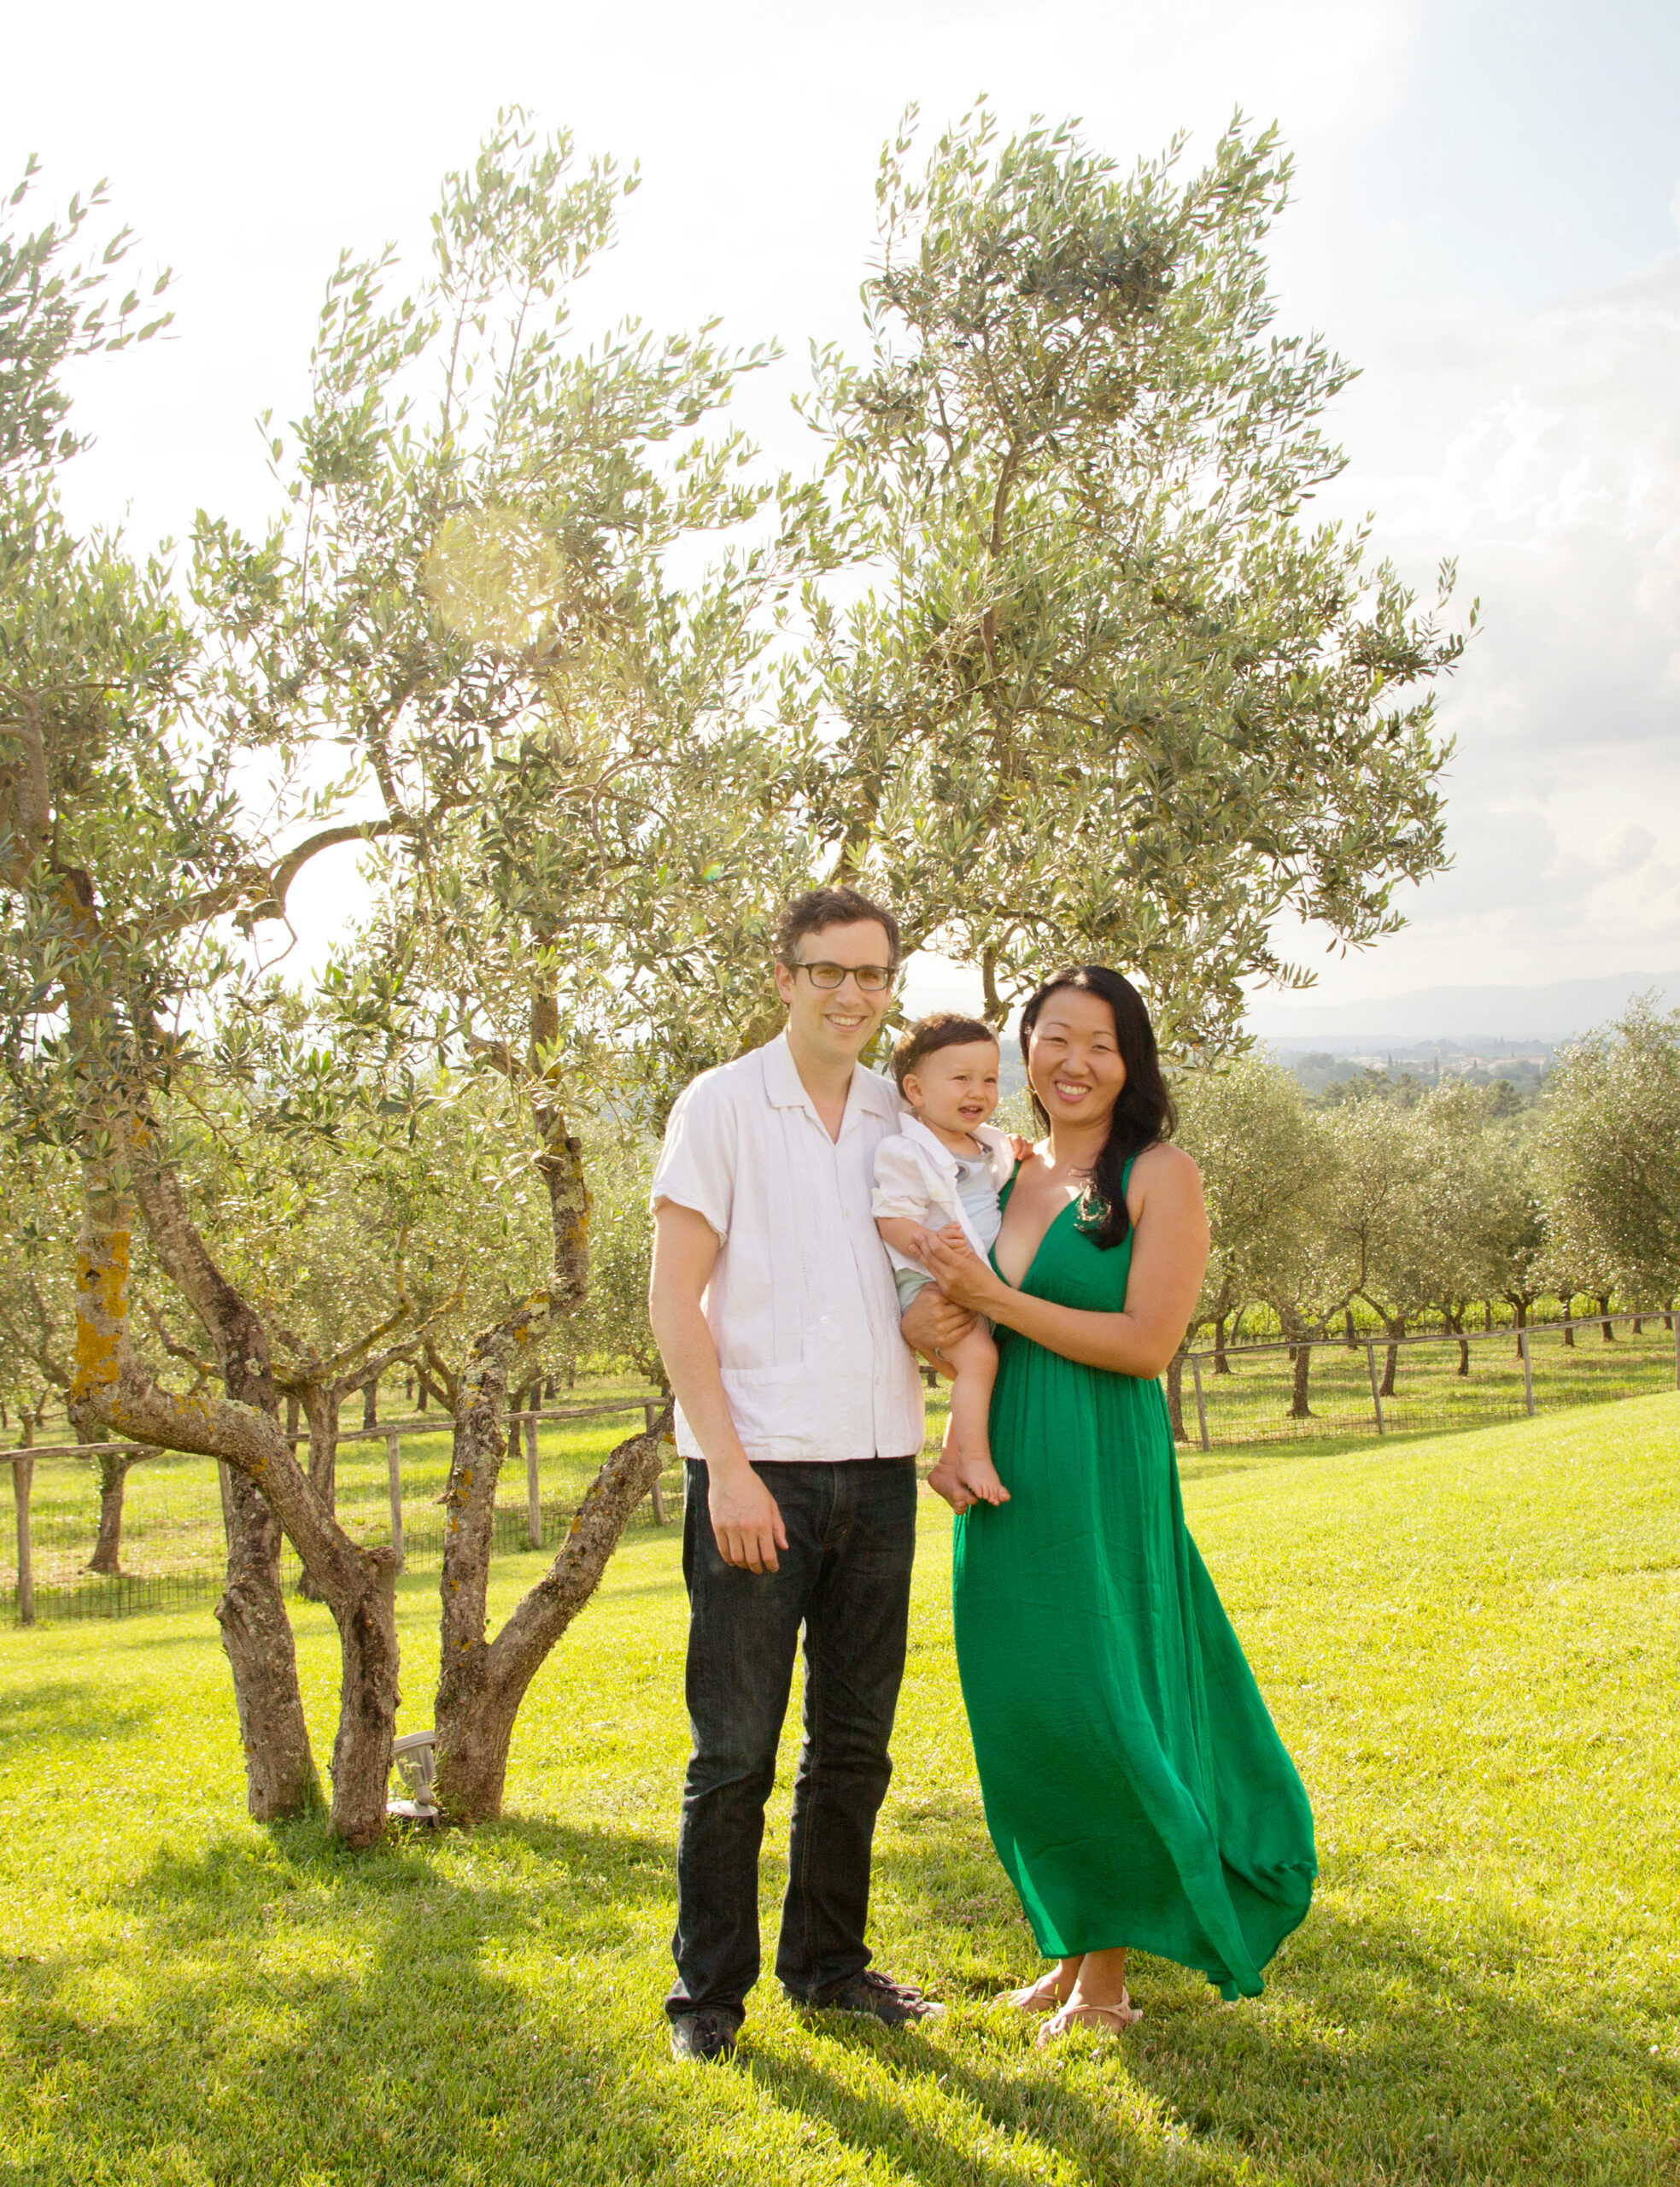 Family Reunion Photoshoot in Tuscany Italy